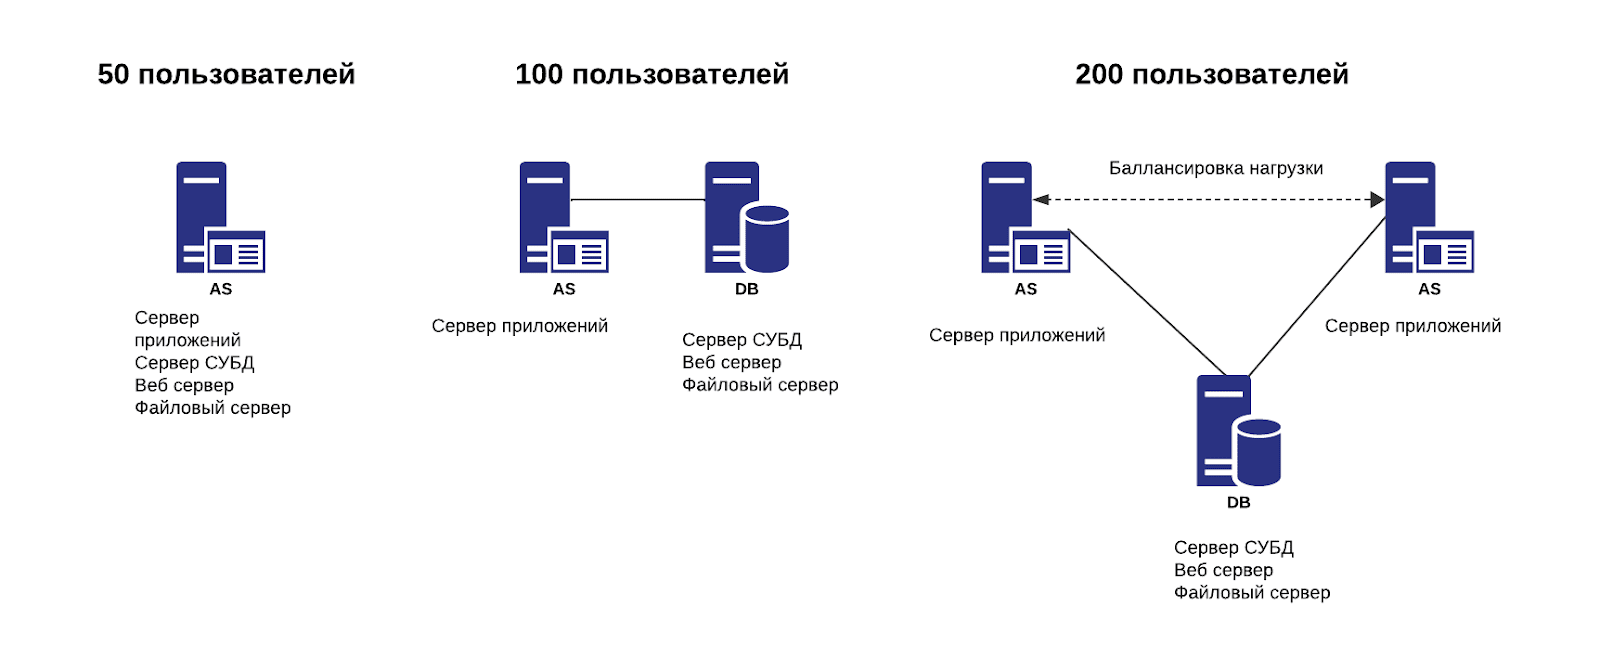 Схемы распределения серверных ролей при использовании ТК  